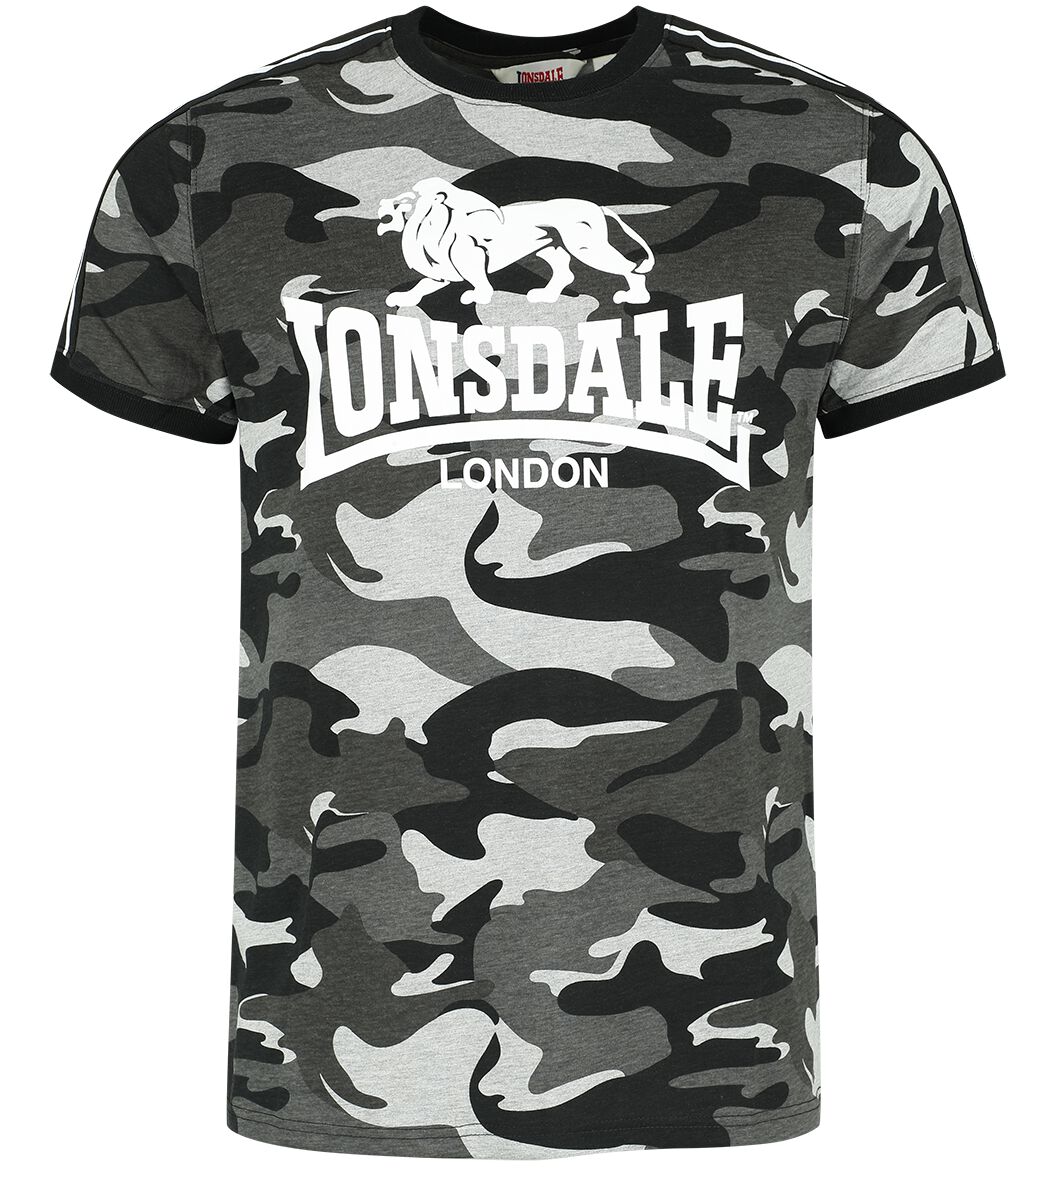 Lonsdale London - Camouflage/Flecktarn T-Shirt - CREGNEASH - S bis XXL - für Männer - Größe L - graucamo